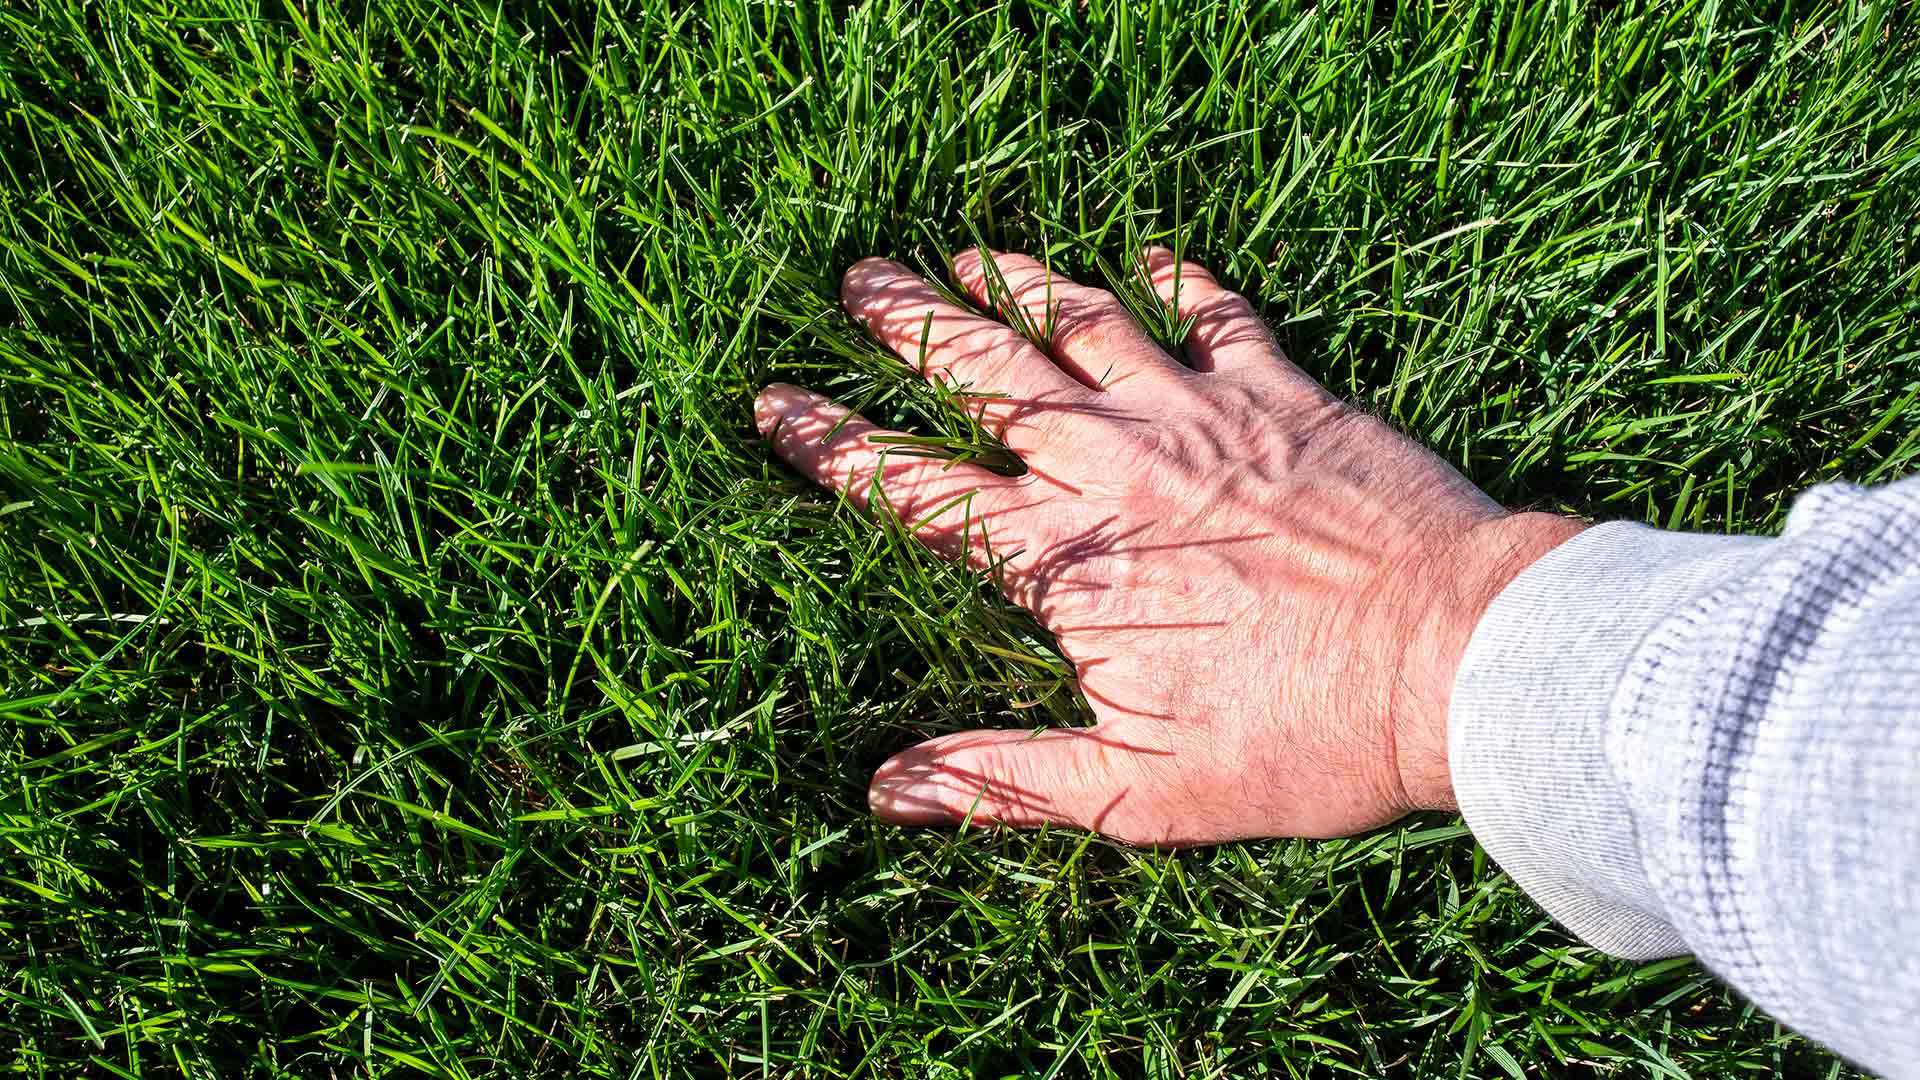 Hand feeling fertilized and healthy lawn in Phoenix, AZ.